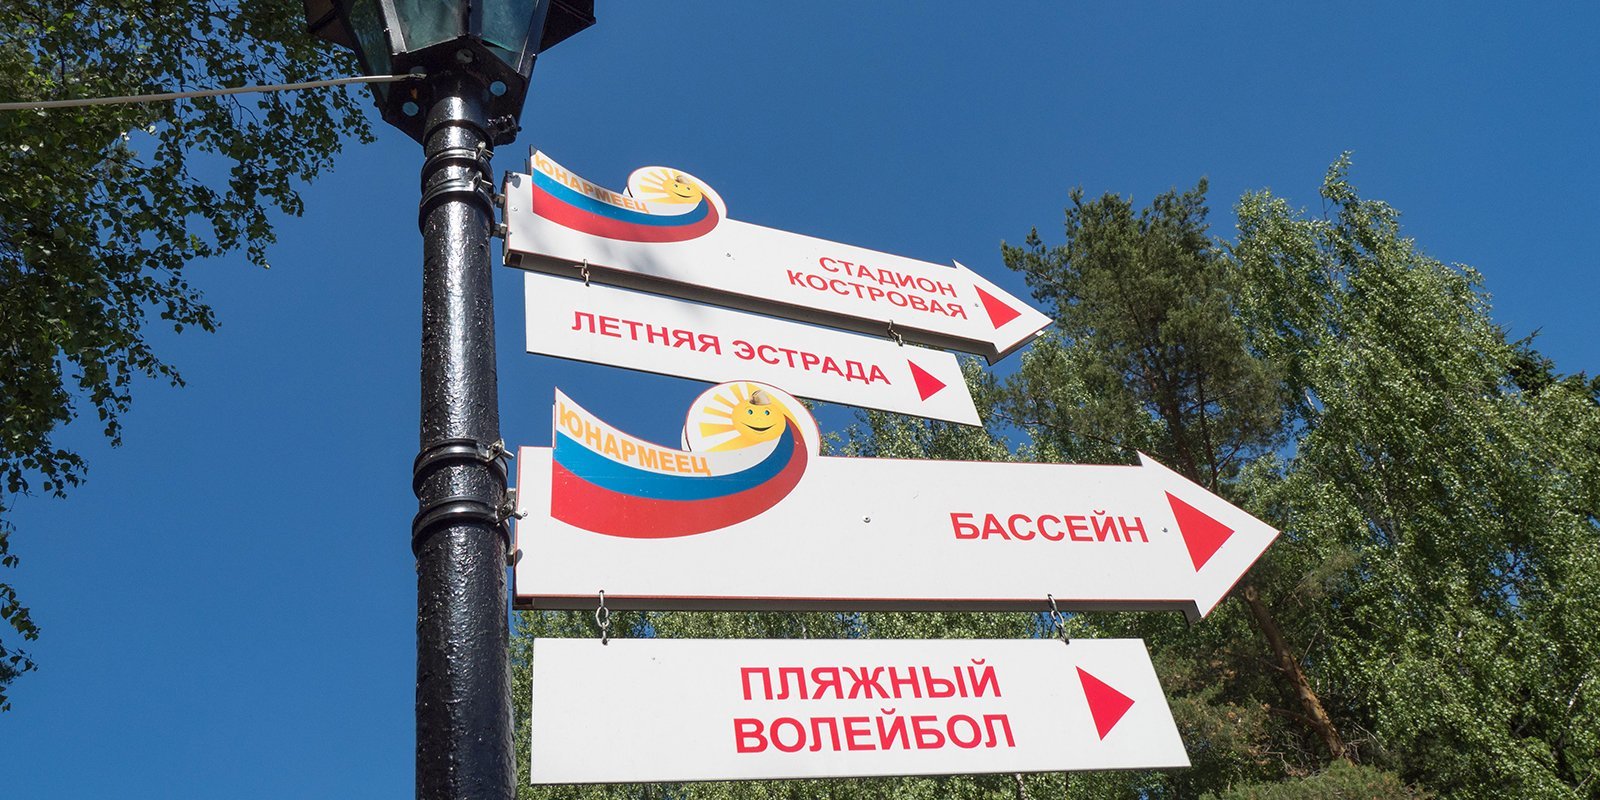 Московские парки подготовили мастер-классы и экскурсии ко Дню знаний